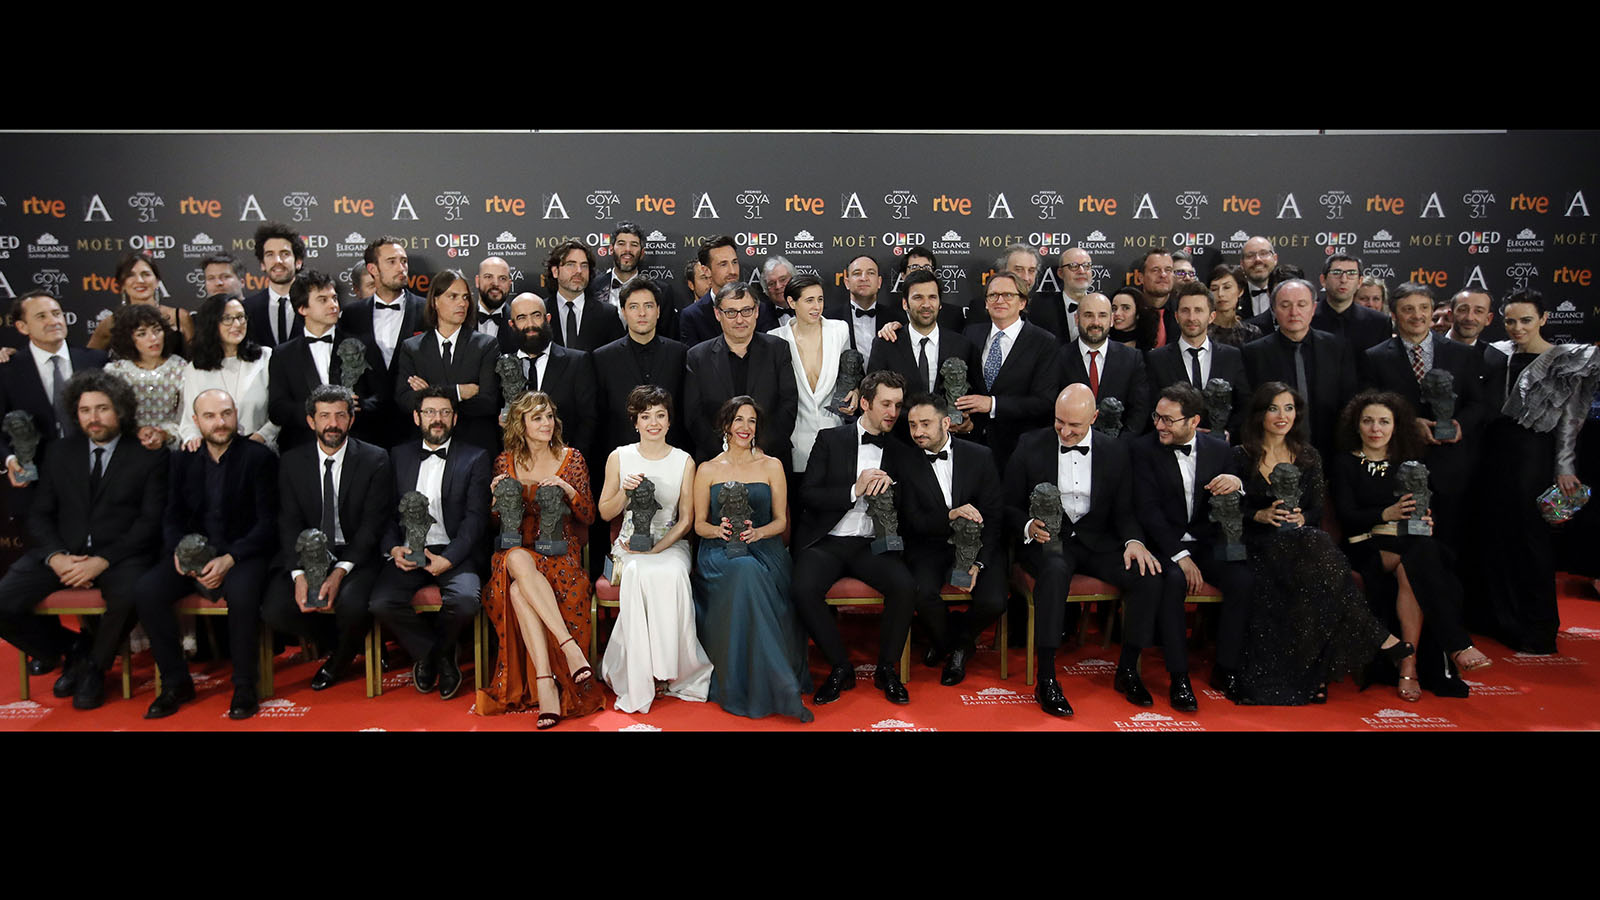 Los premiados posan con sus galardones al término de la gala de entrega de la XXXI edición de los Premios Goya.